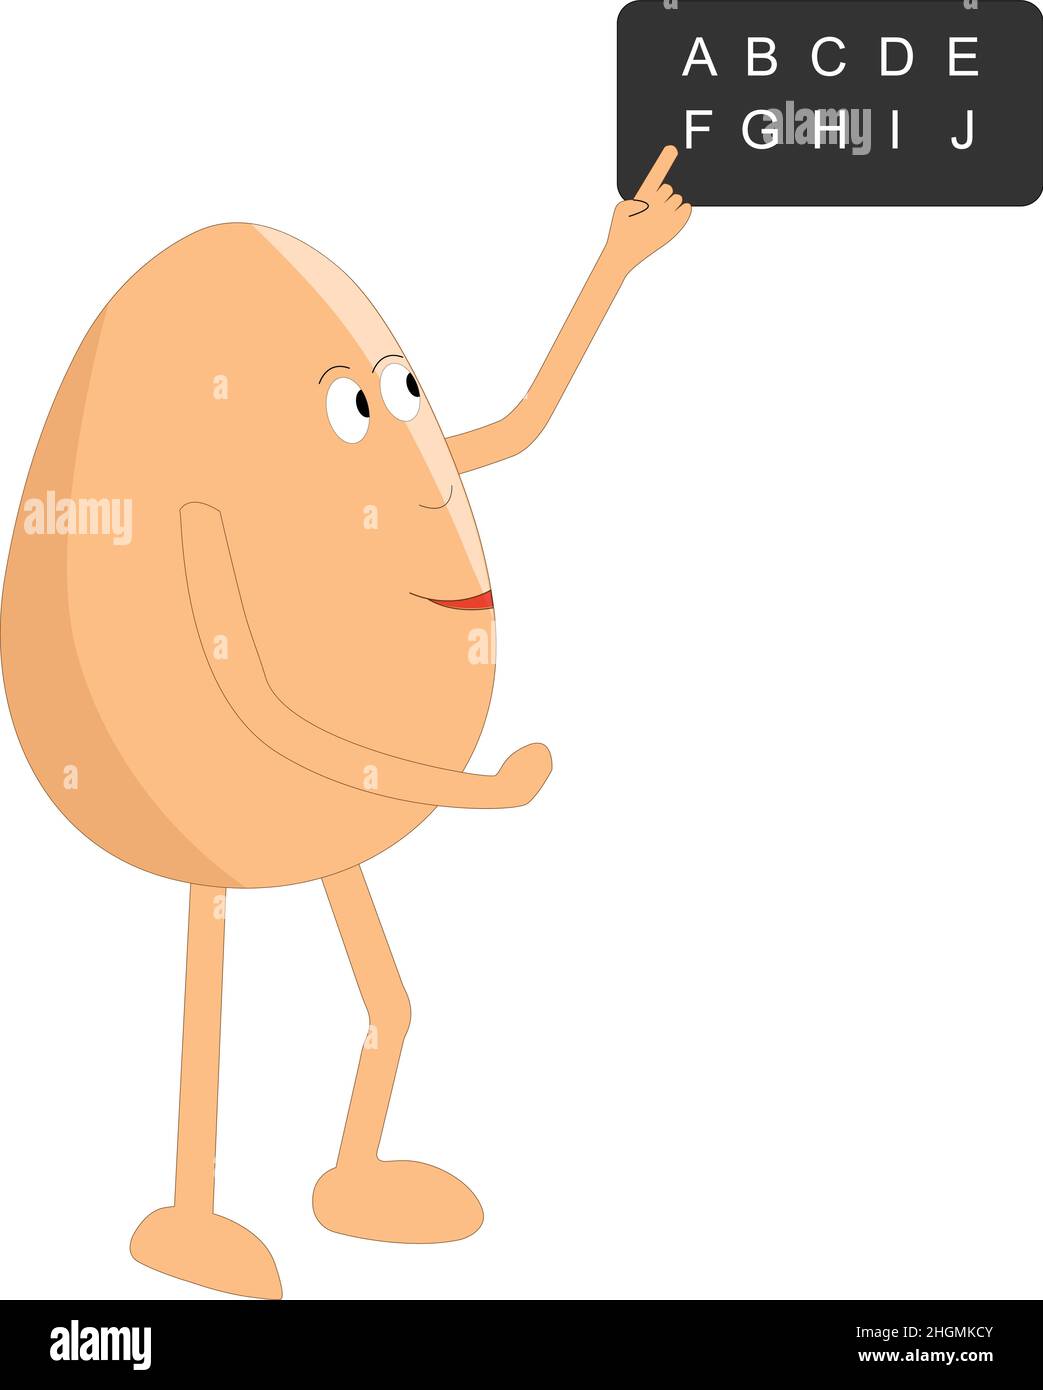 Cute teacher egg teaching abcd vector illustration cartoon Stock Vector  Image & Art - Alamy